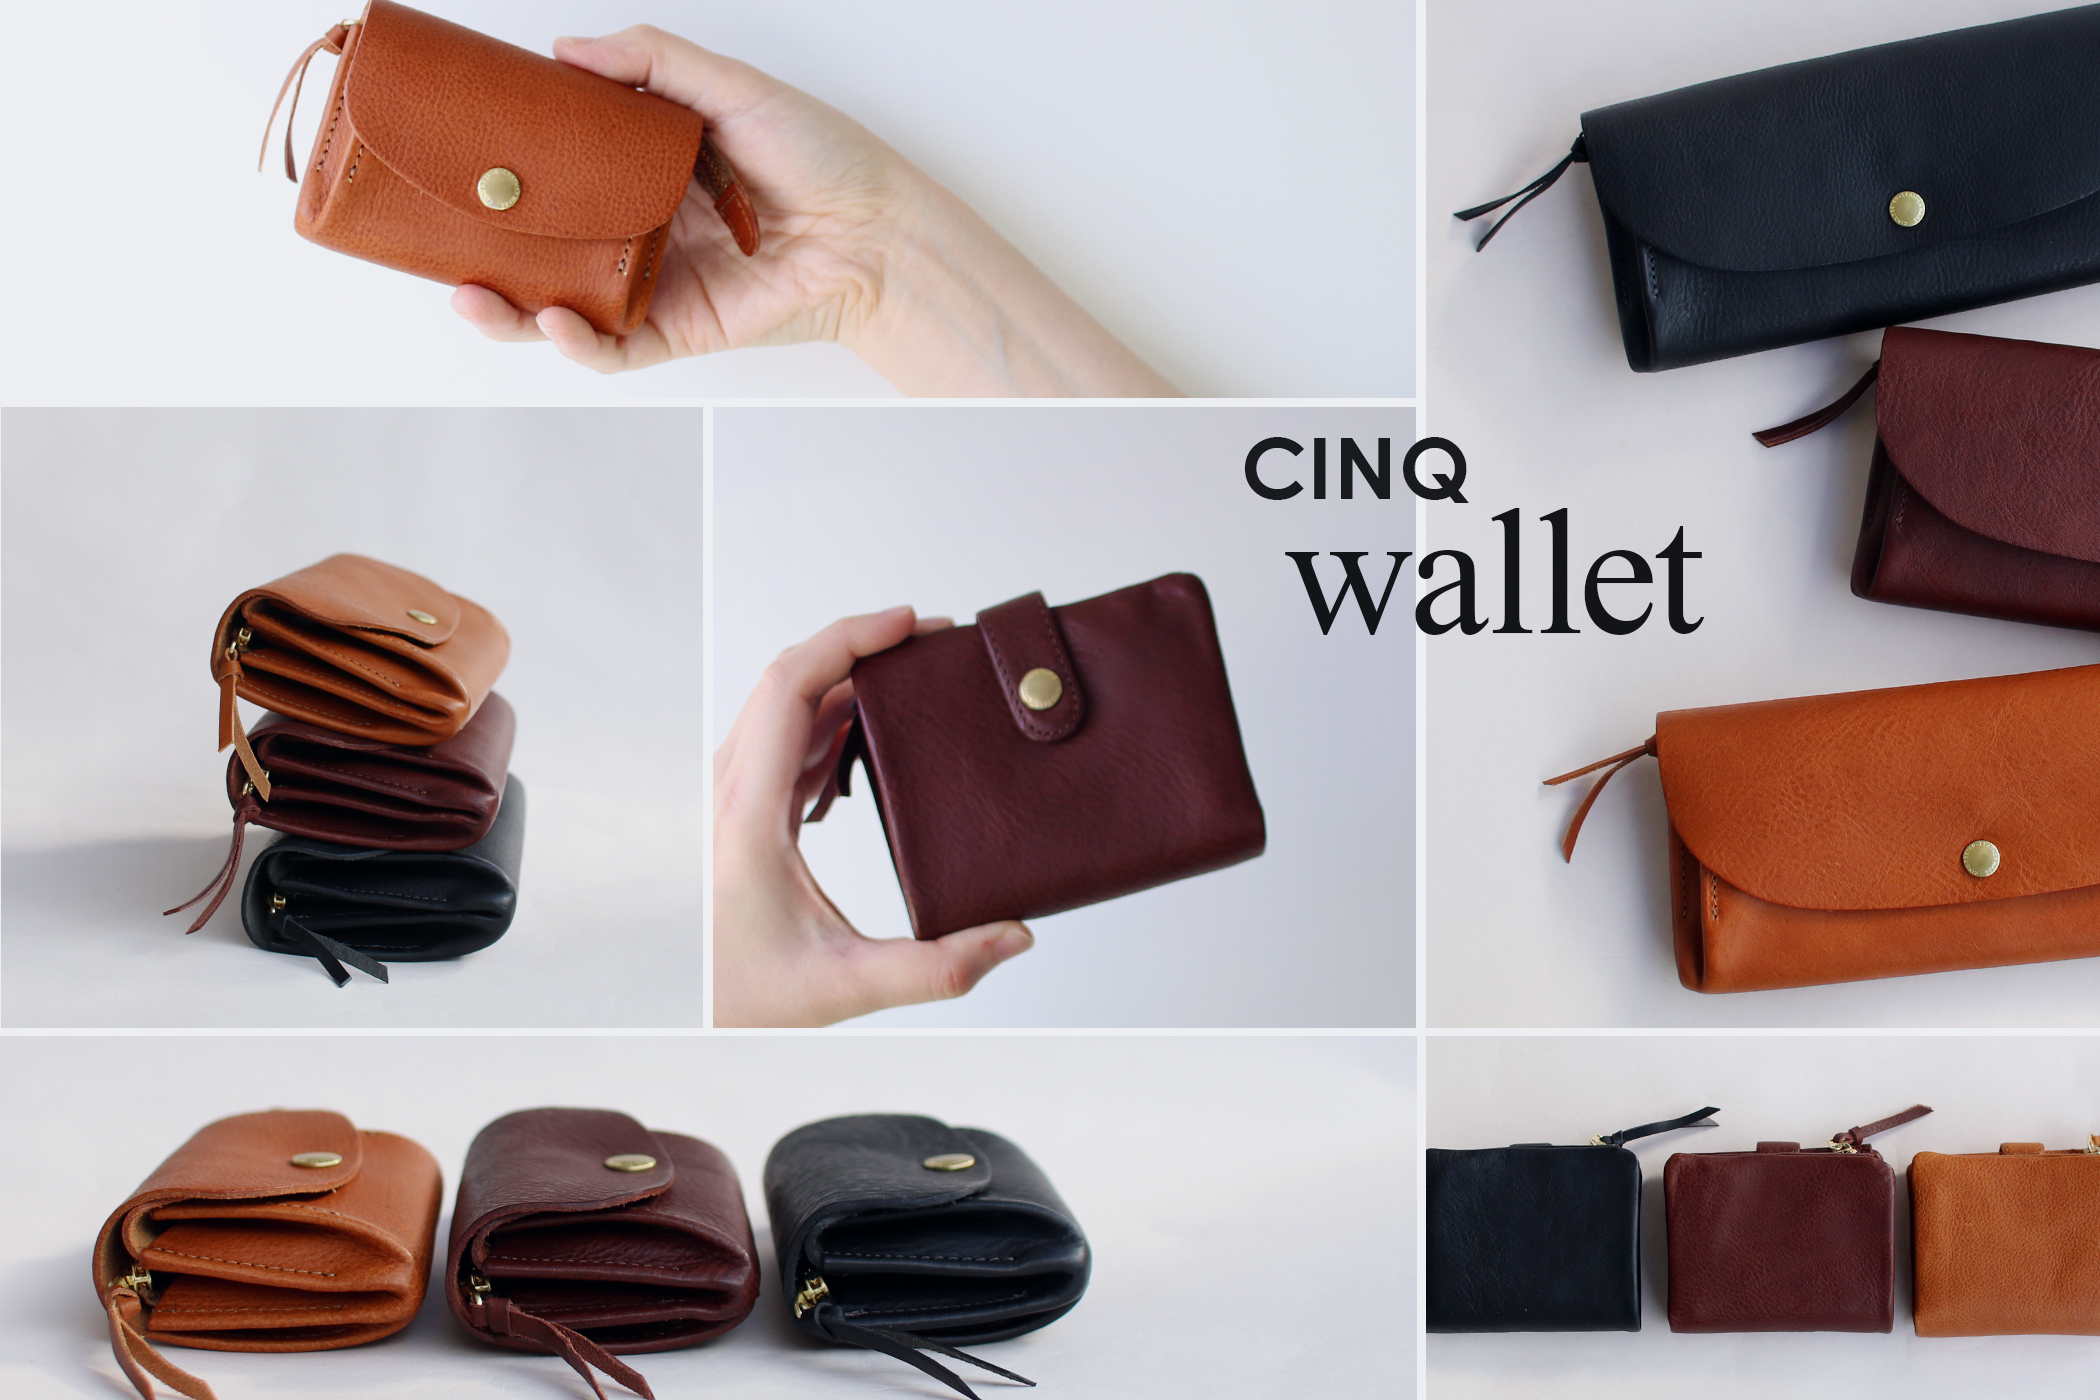 CINQ wallet｜収納力抜群のミニマルな財布 CDC STORES｜シーディーシー ストアーズ